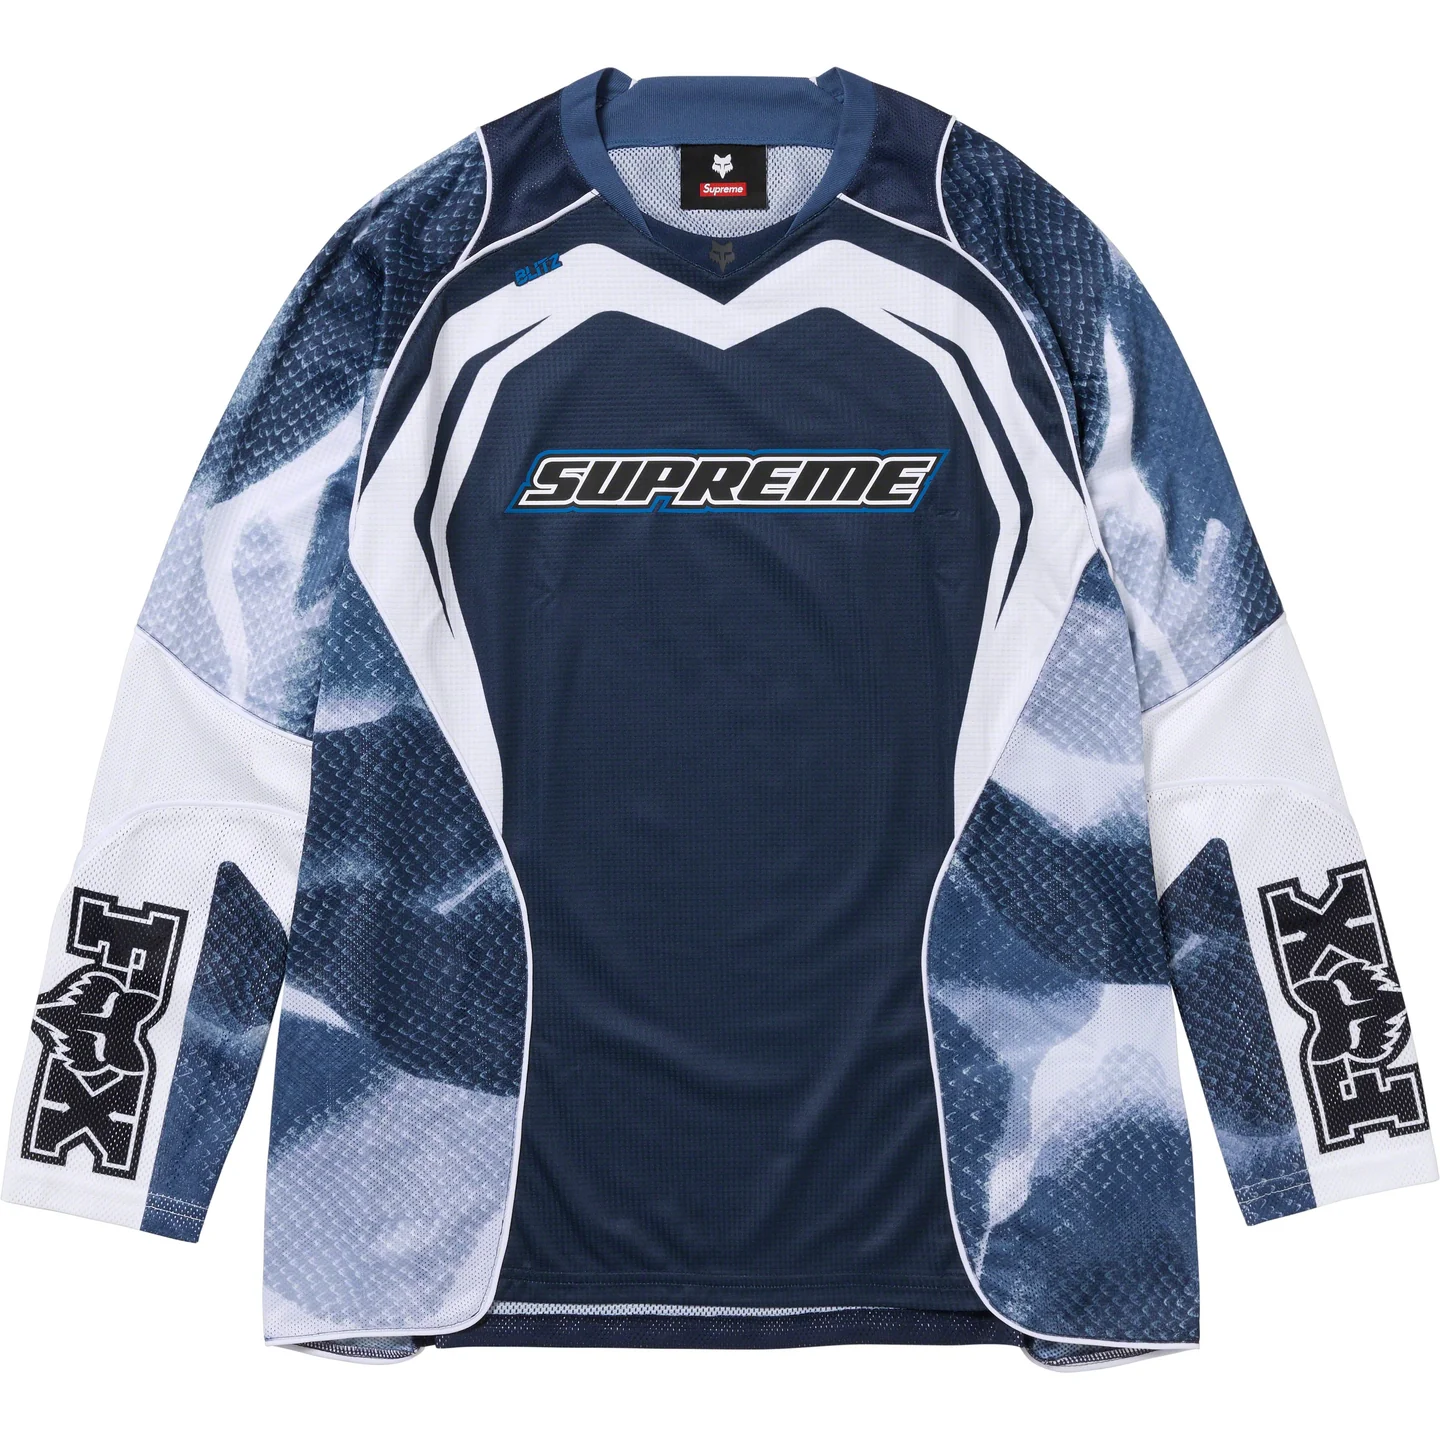 Supreme Supreme®/Fox® Racing Jersey